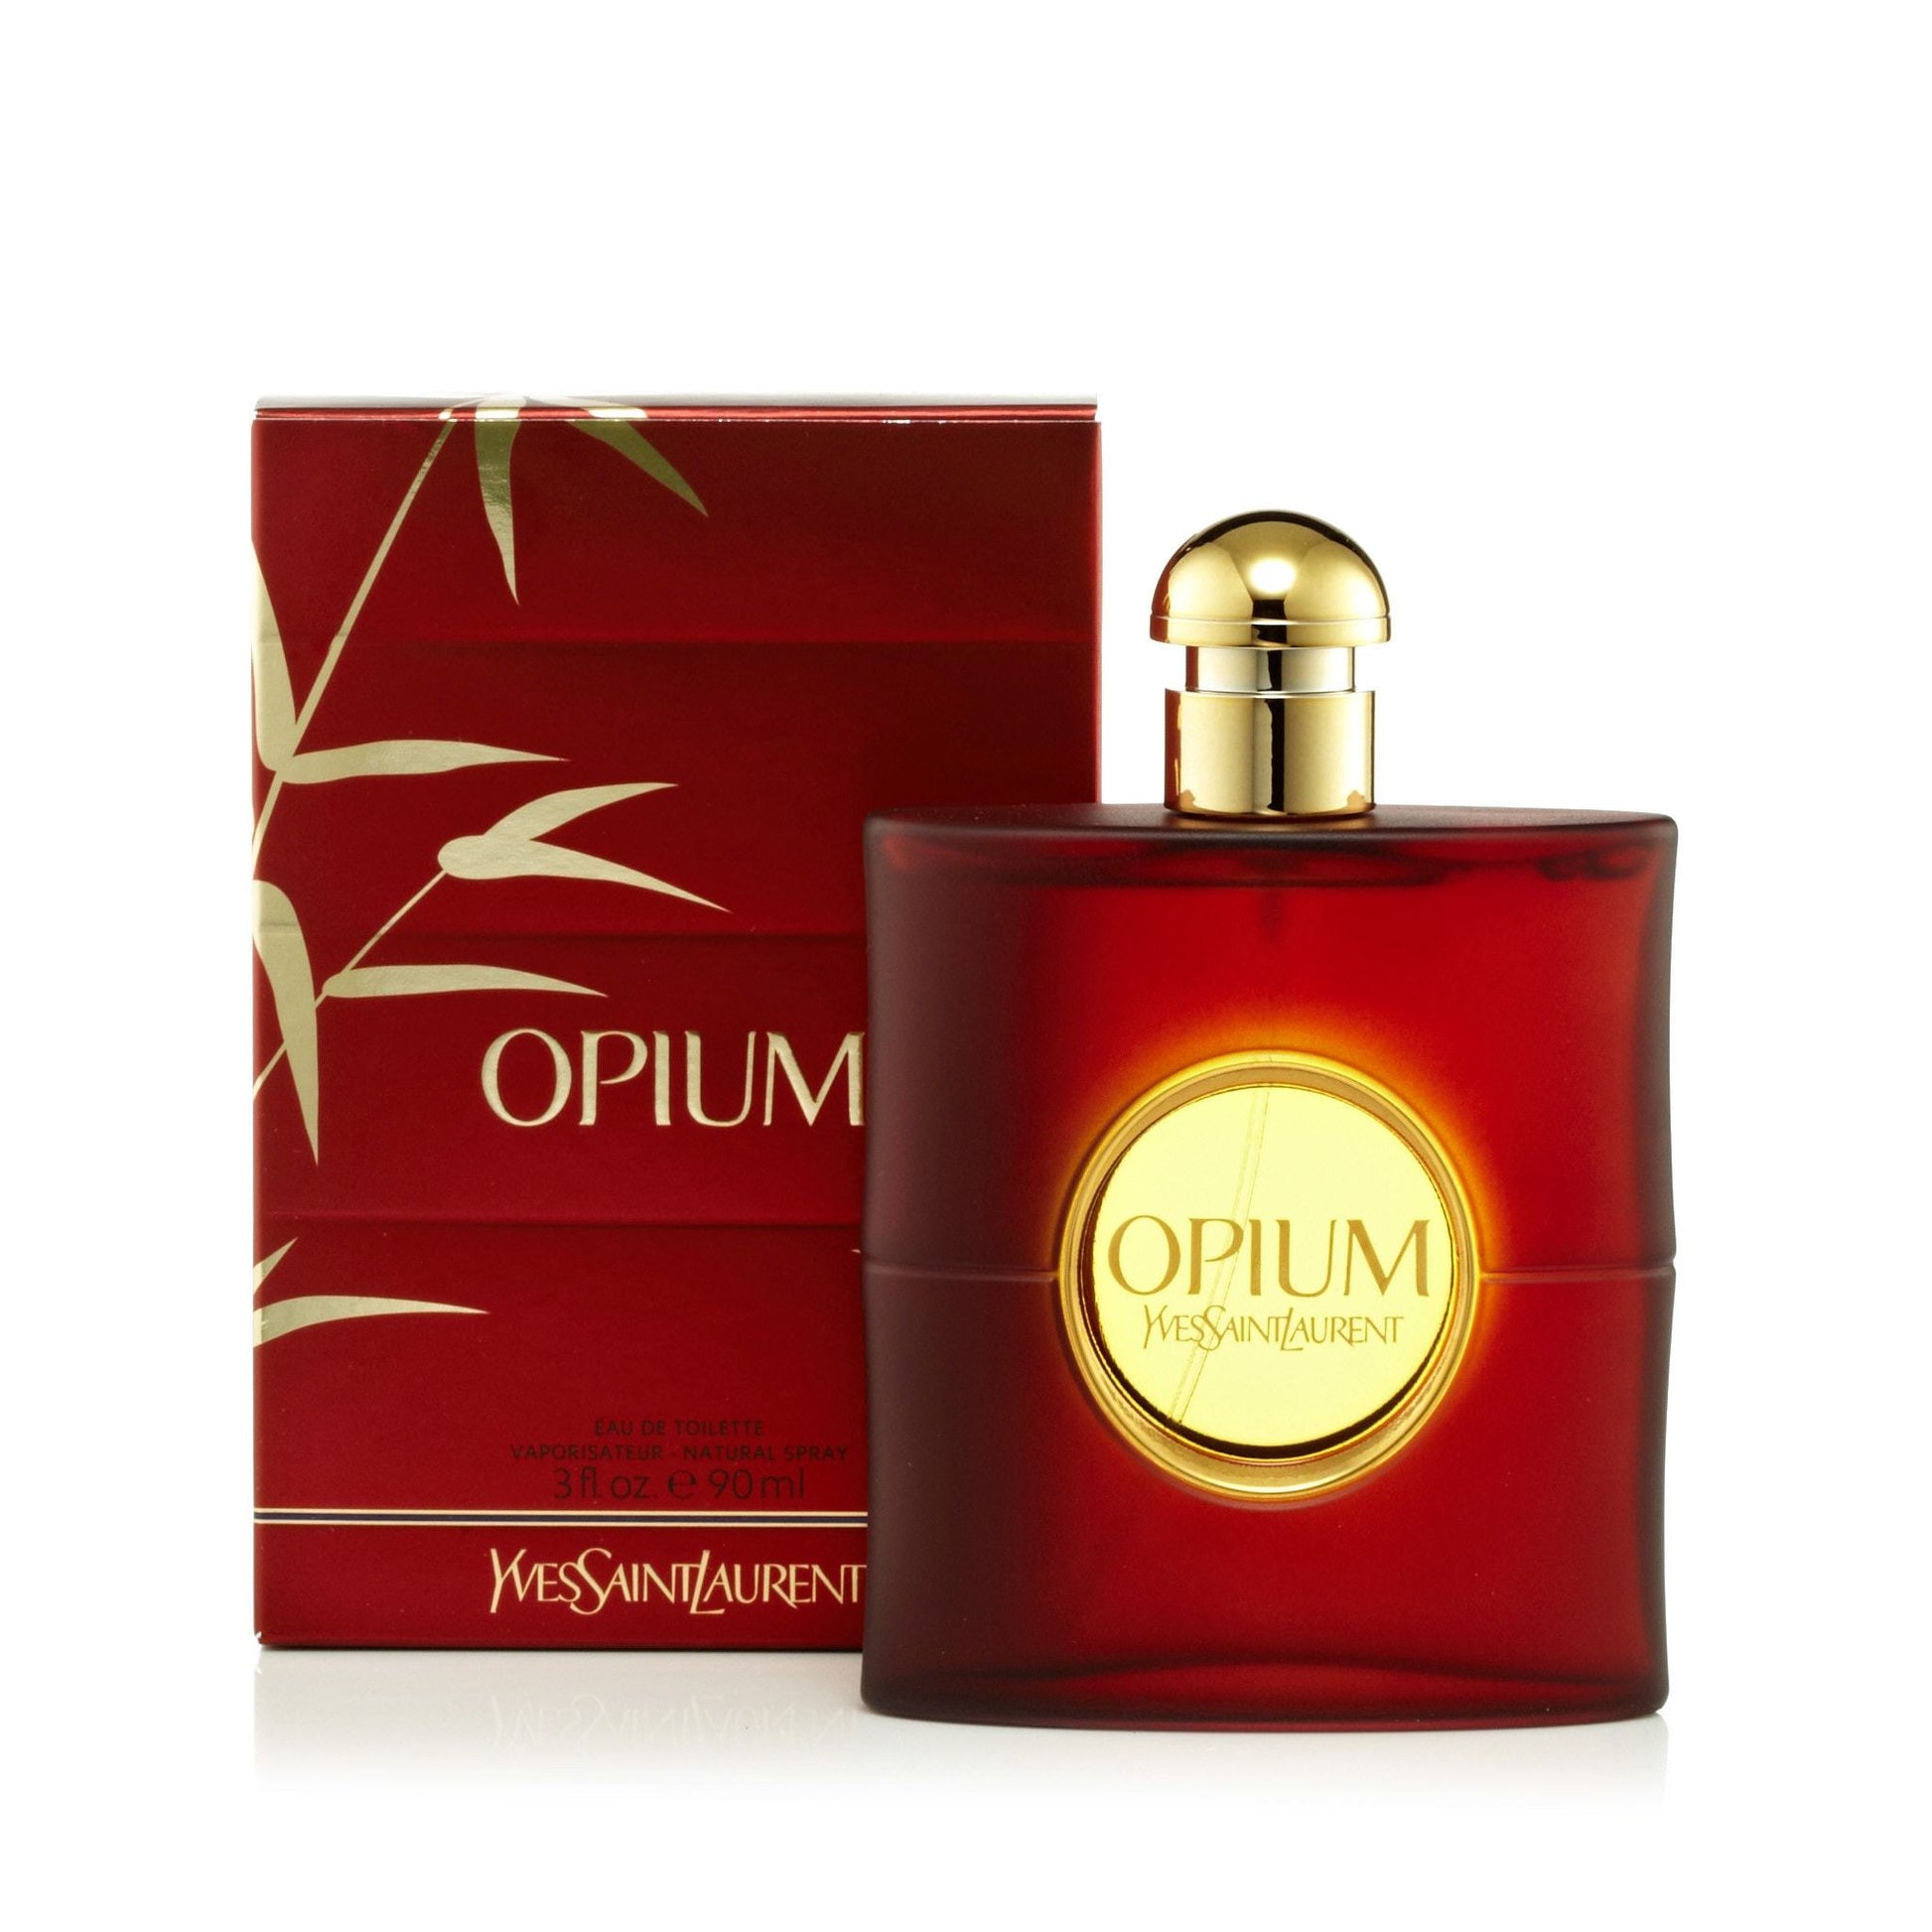 Opium Eau de Toilette Spray for Women by Yves Saint Laurent, Product image 1